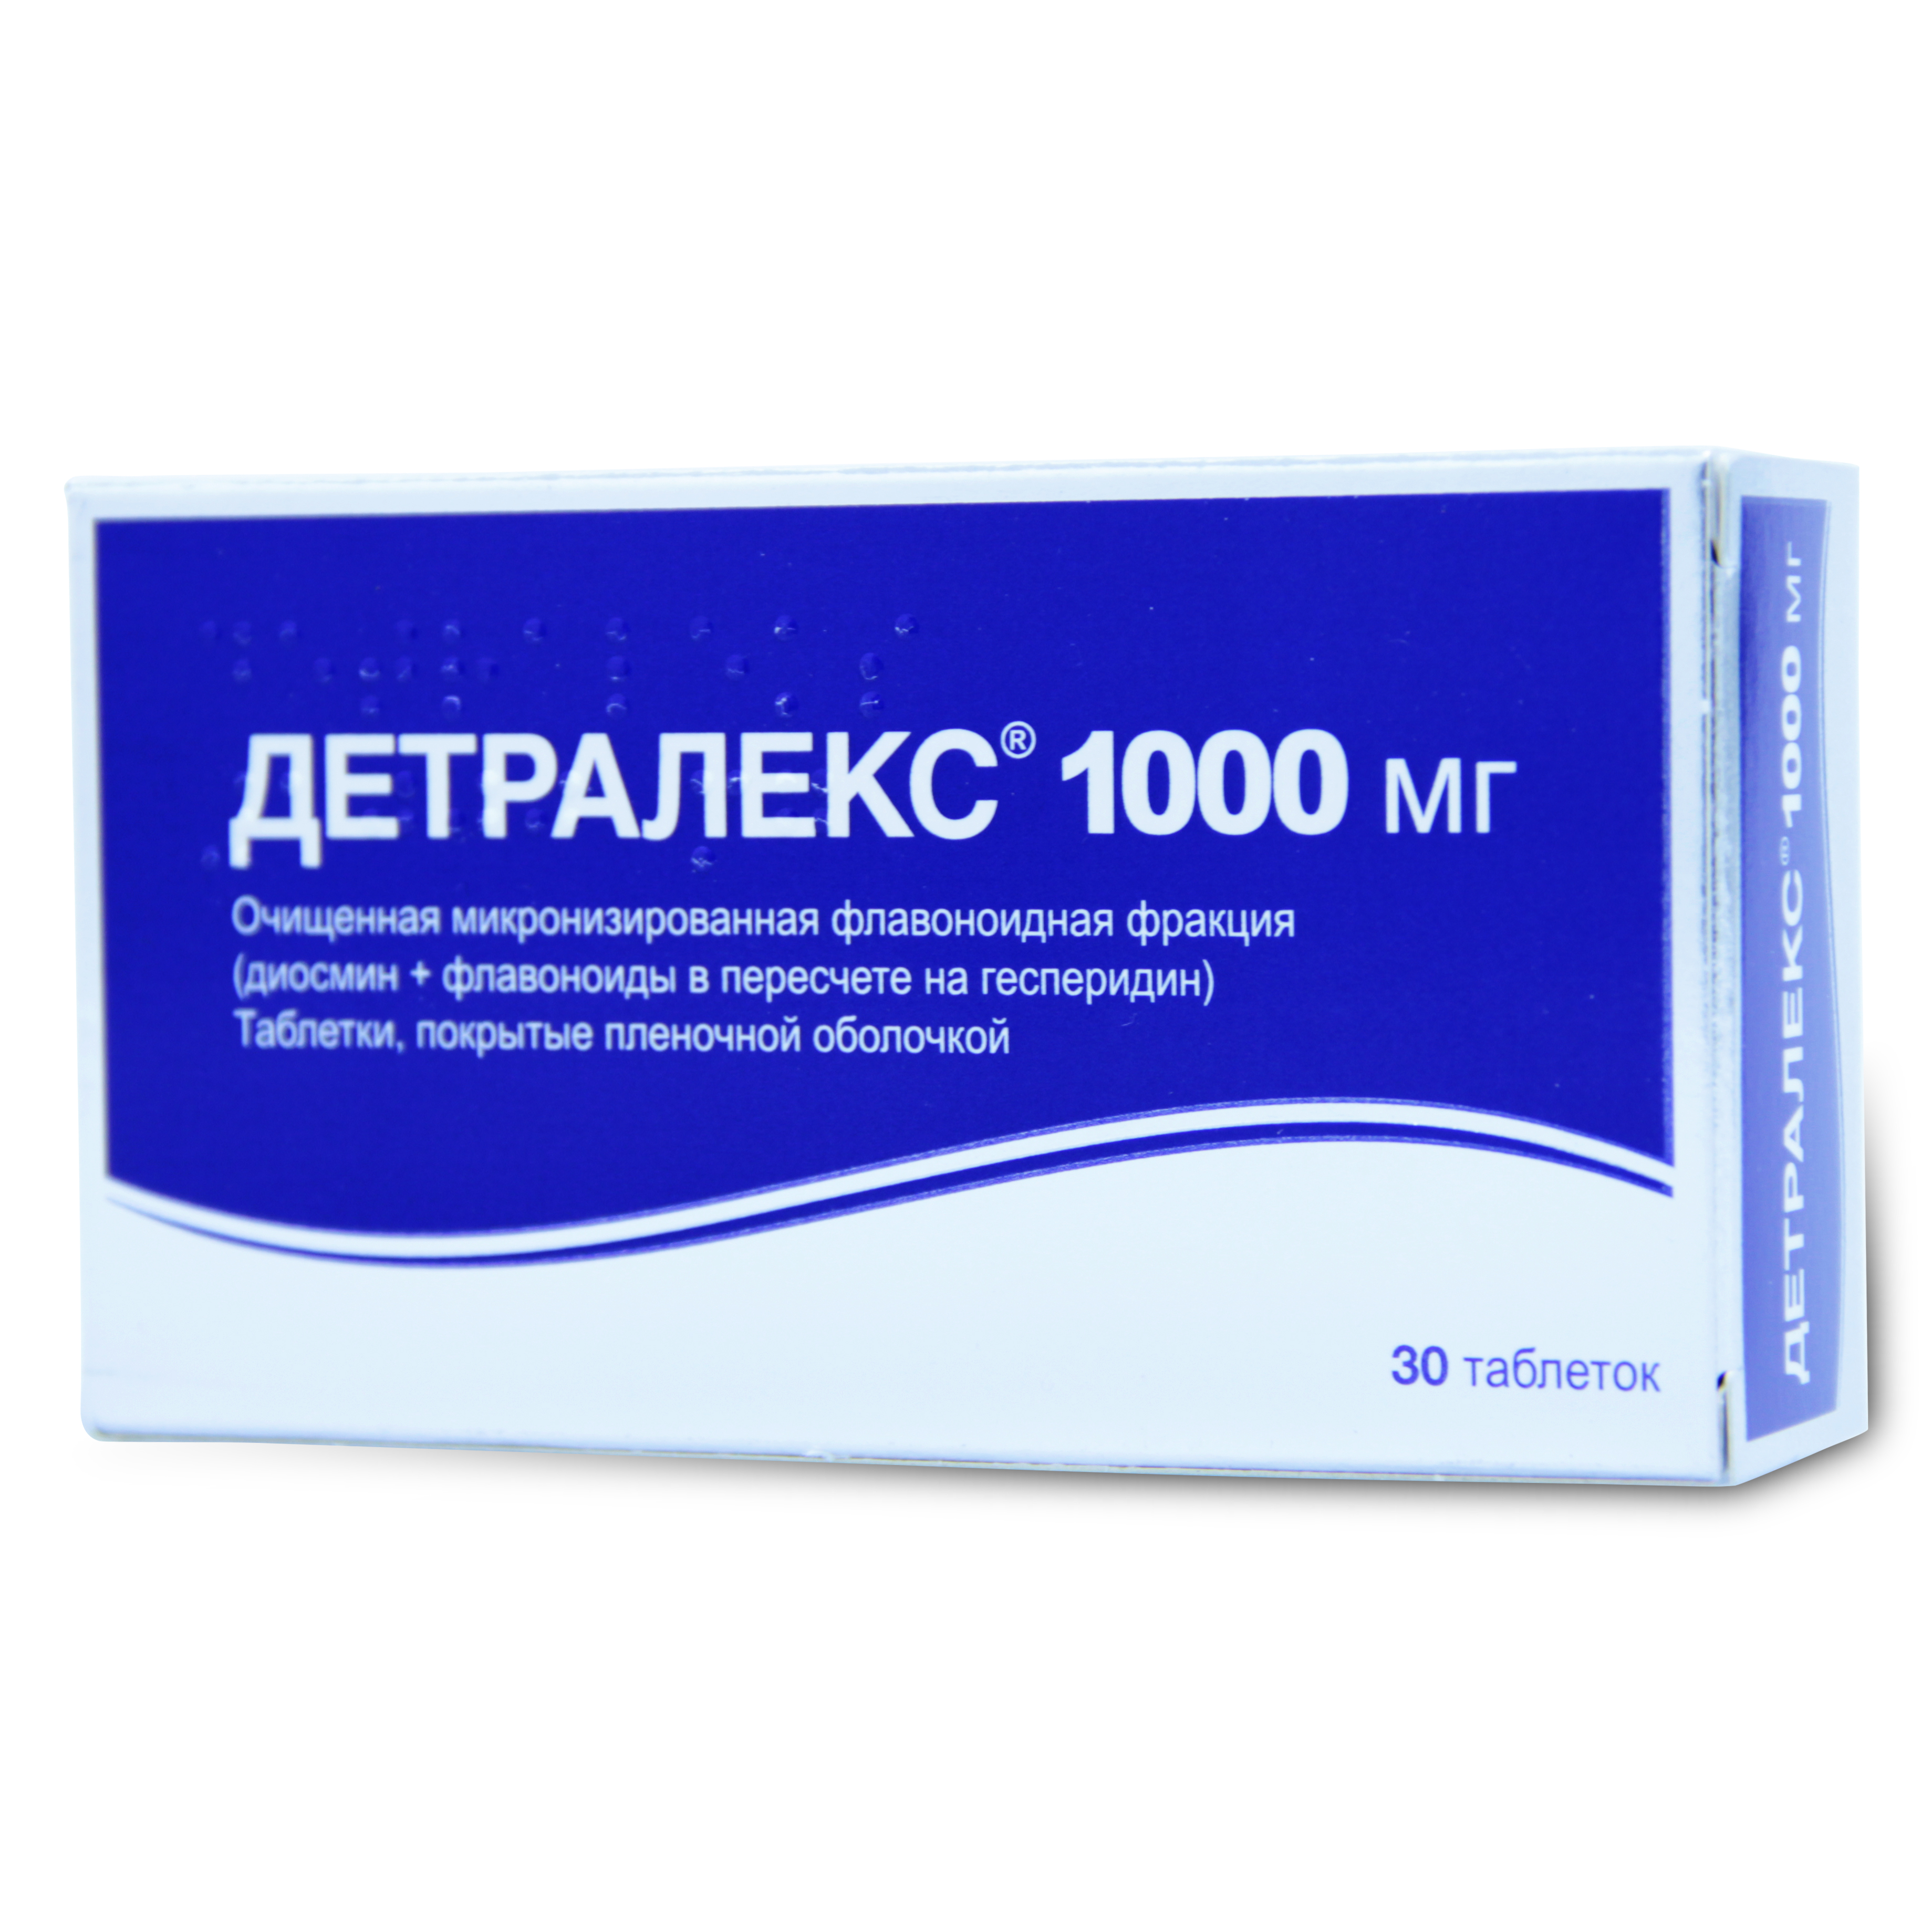 Купить Детралекс таблетки покрытые пленочной оболочкой 1000 мг 30 шт., Сердикс ООО